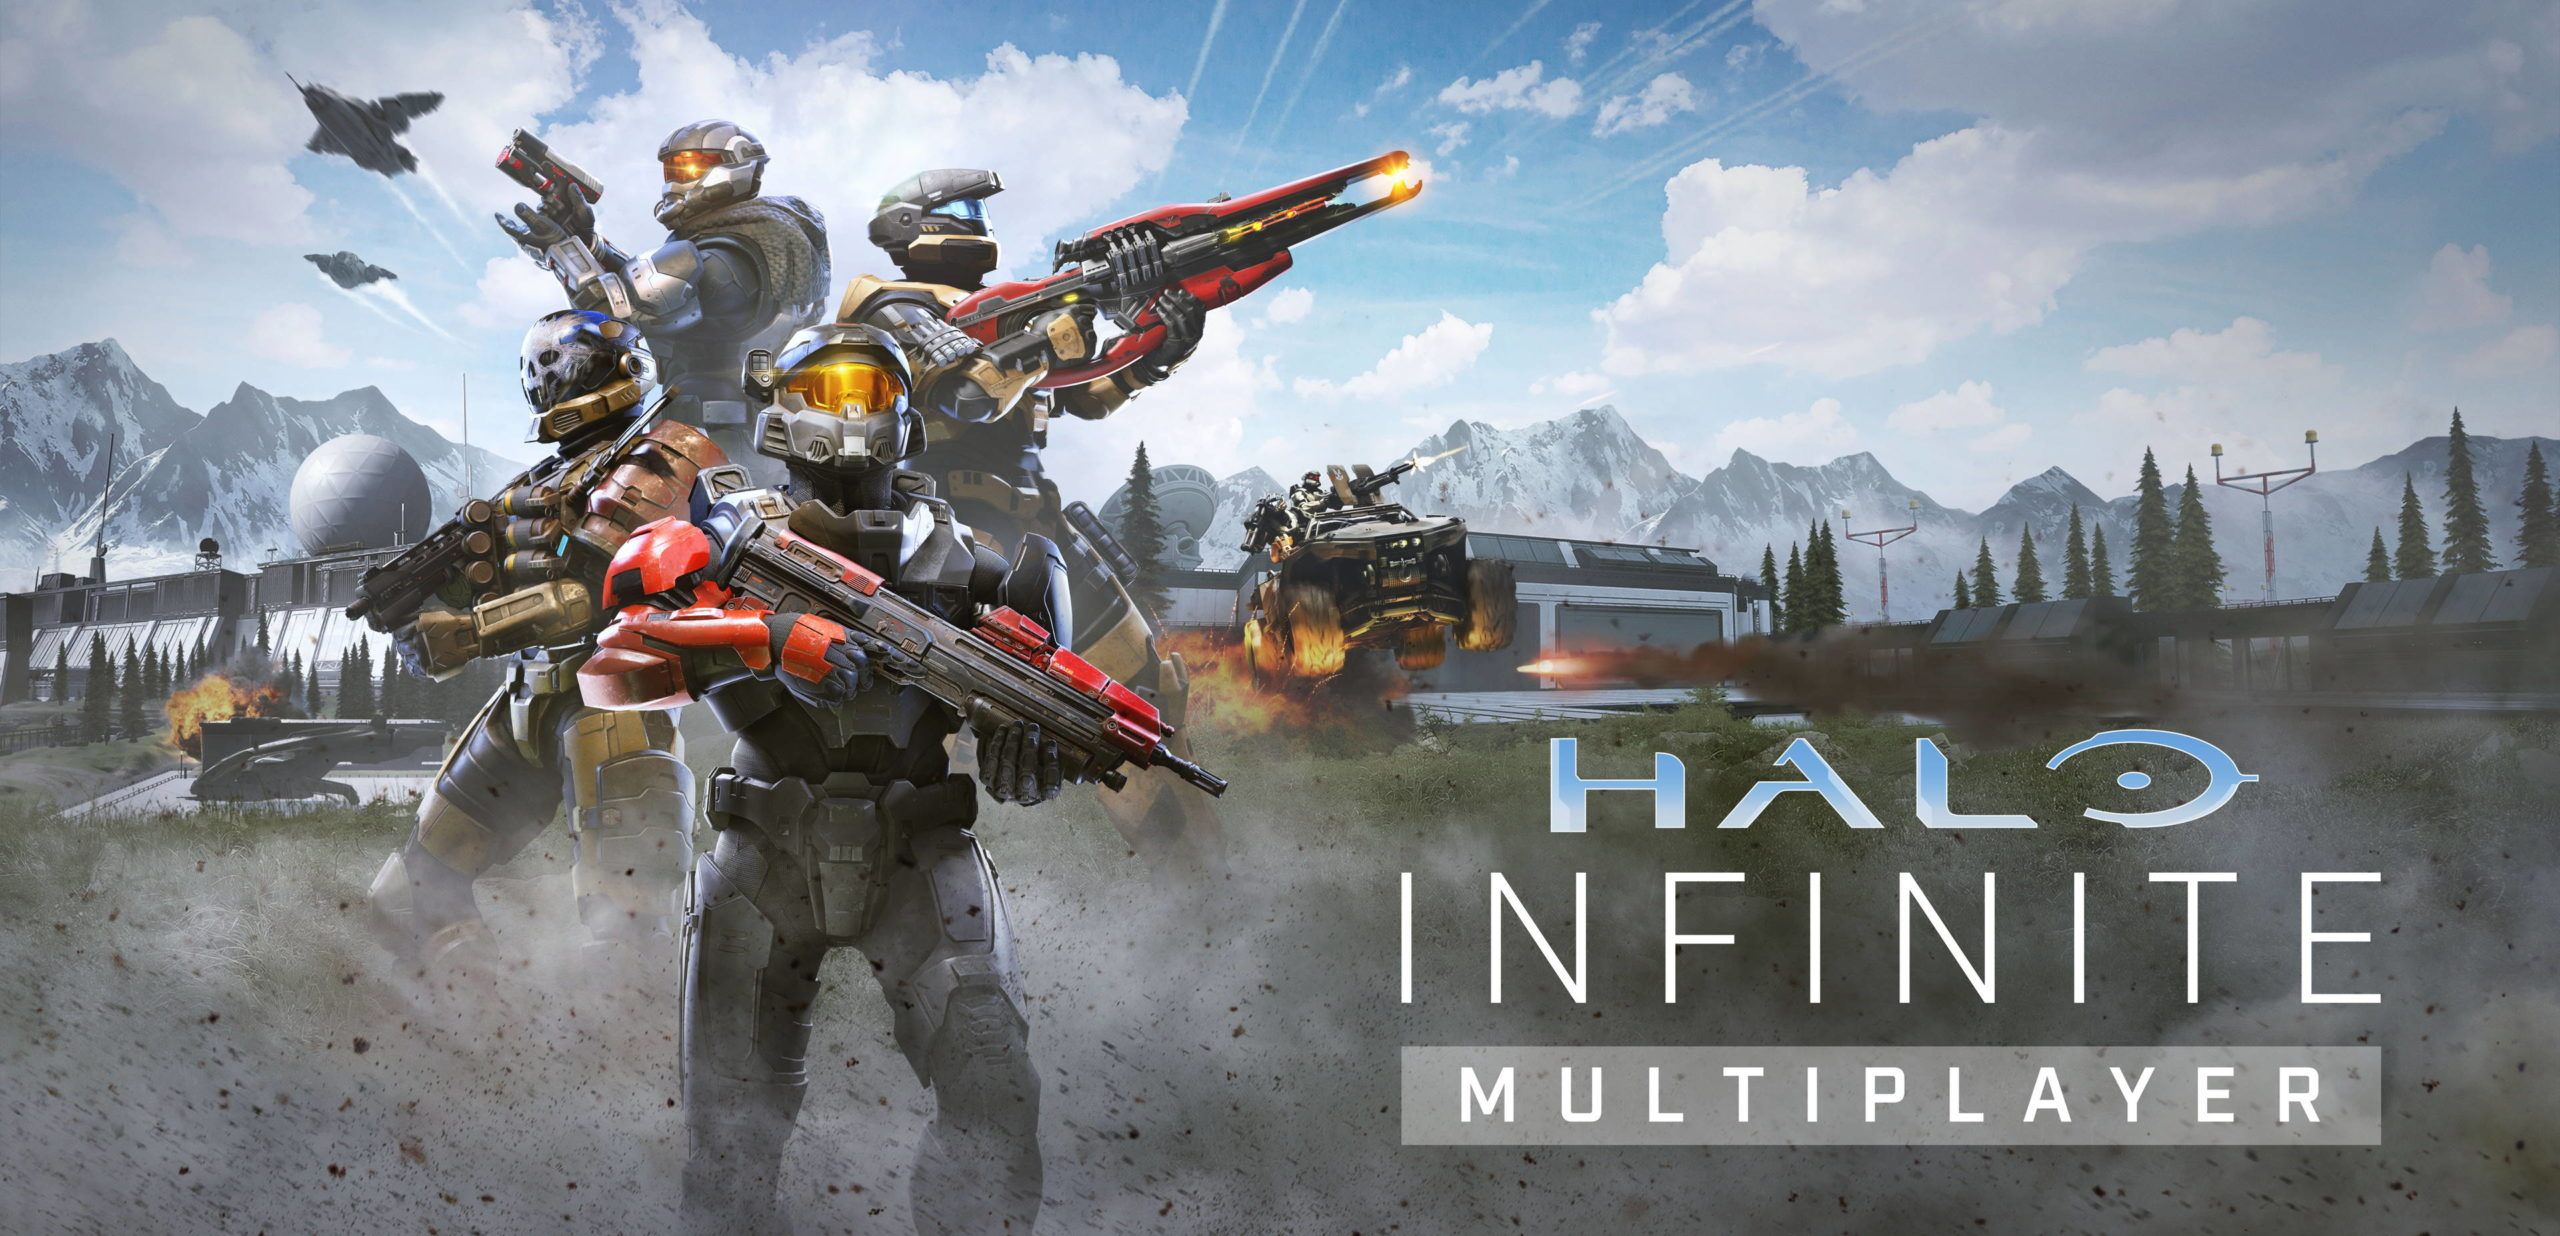 Пиковый онлайн беты мультиплеера Halo Infinite превысил 272 тысячи человек